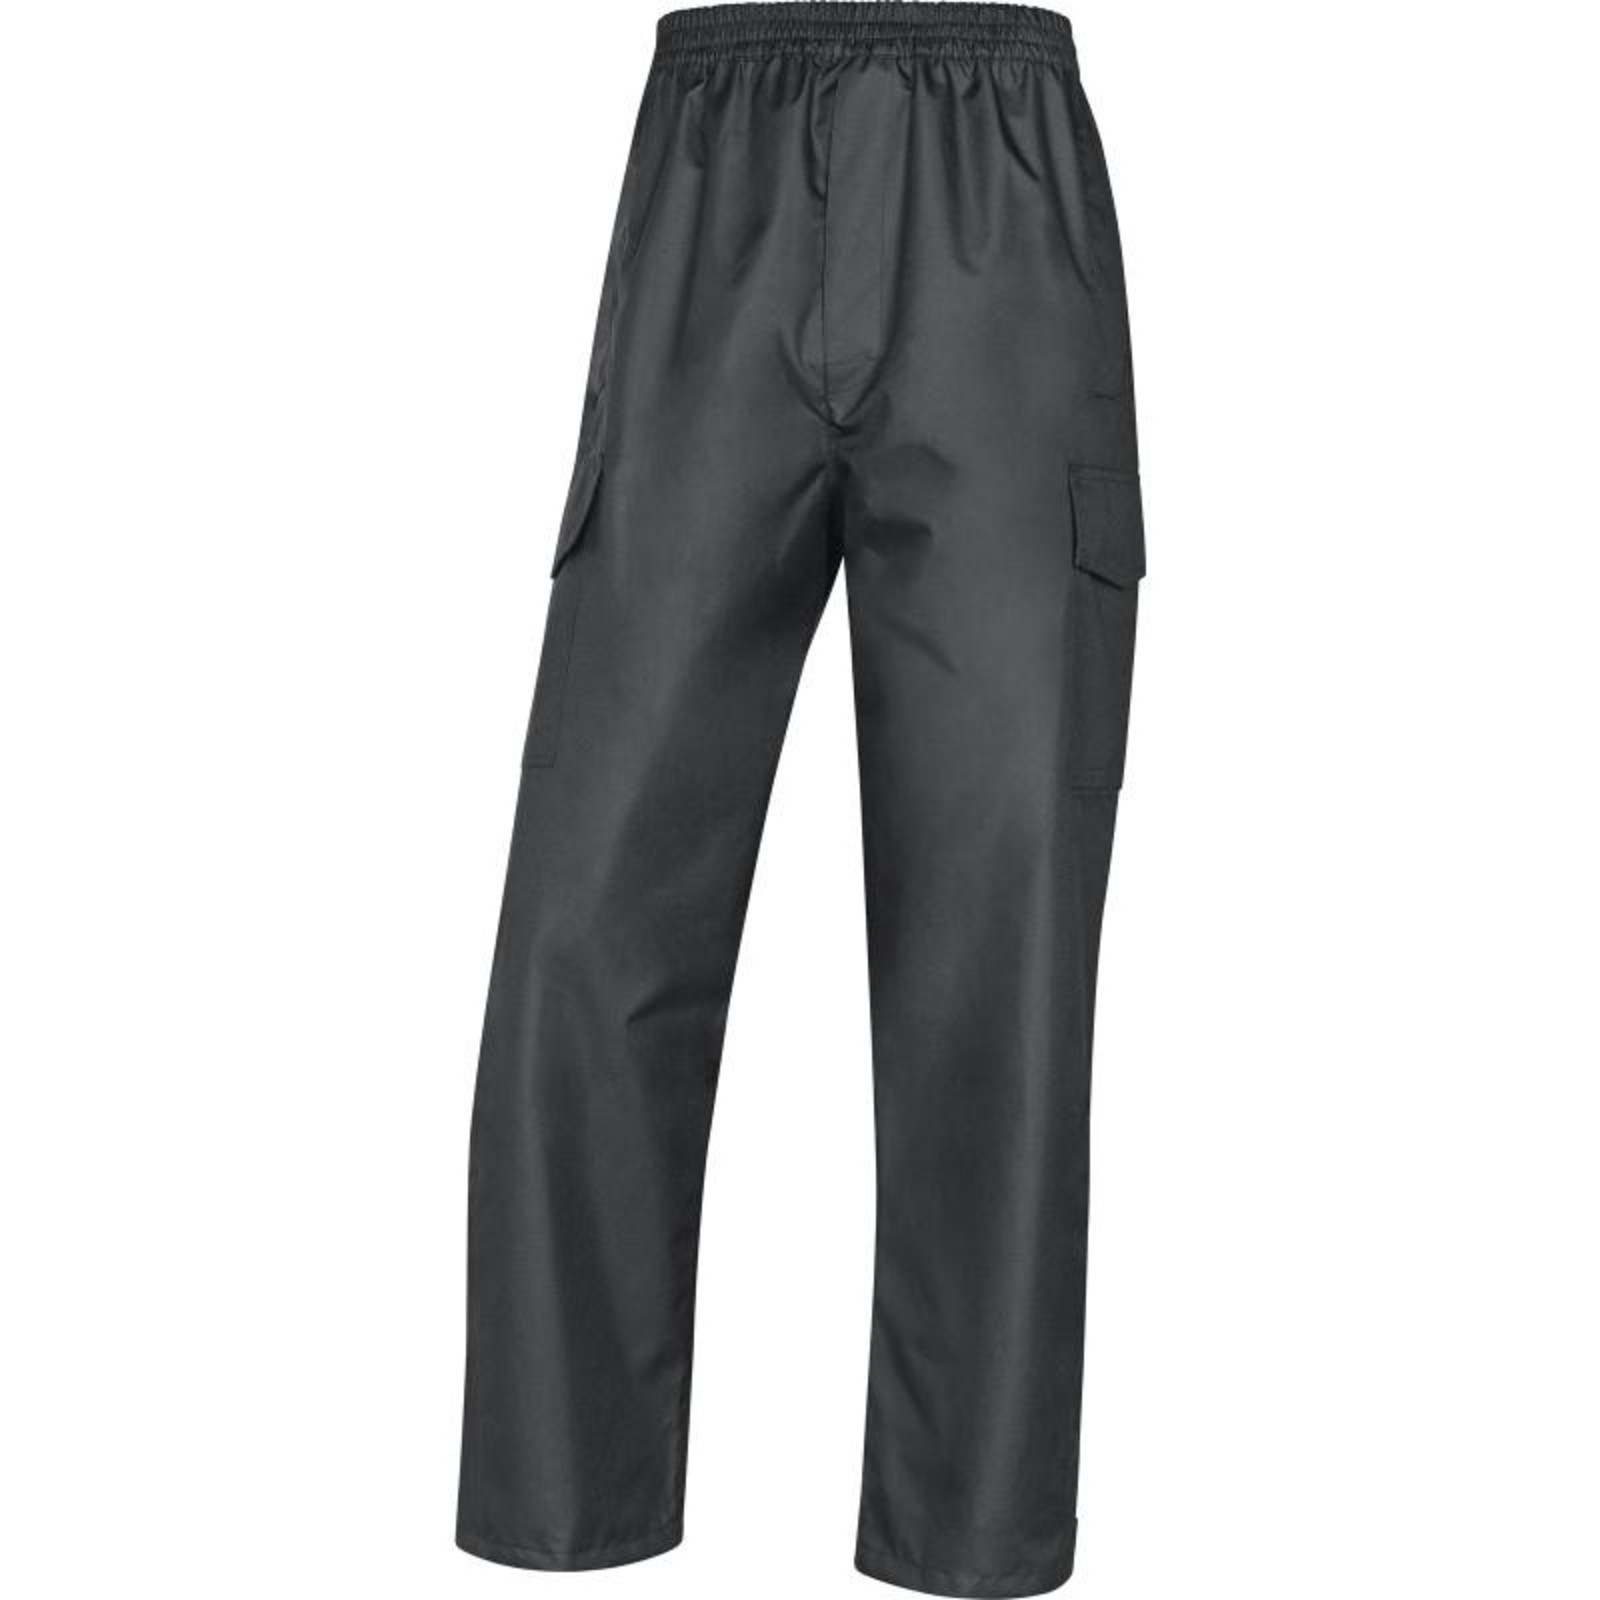 Nohavice do dažďa Galway - veľkosť: L, farba: čierna